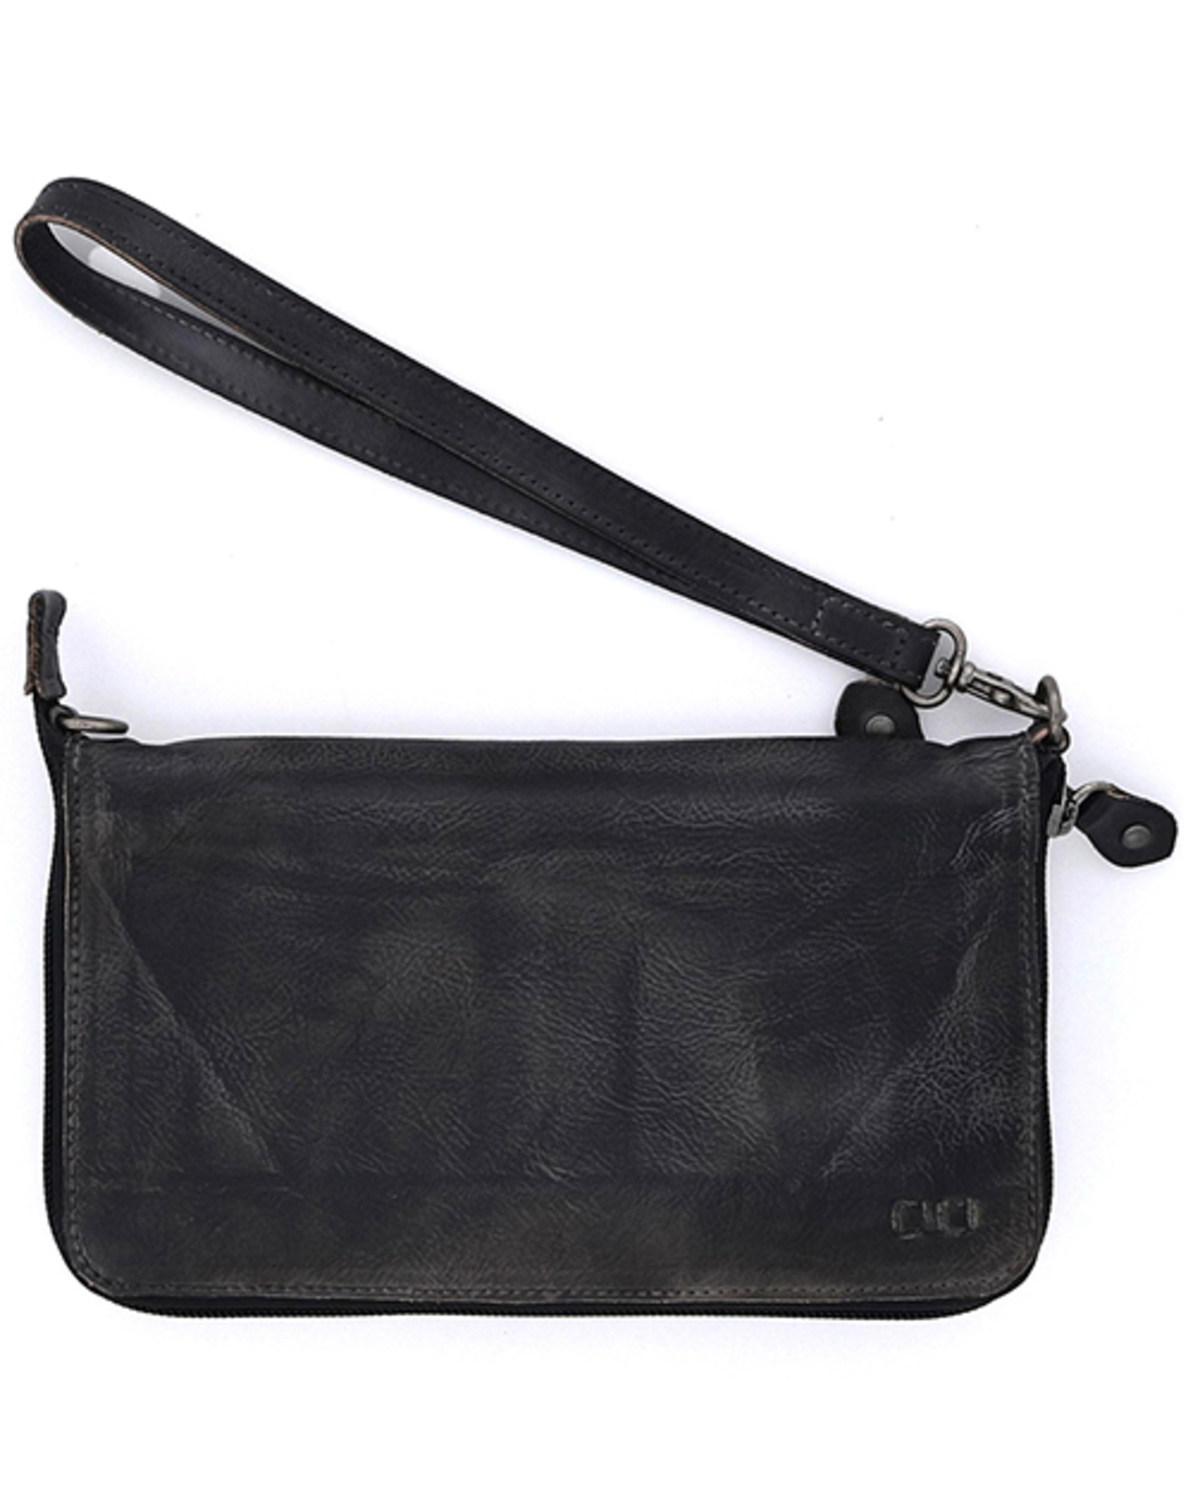 Bed Stu Women's Templeton II Wallet Wristlet Crossbody Bag